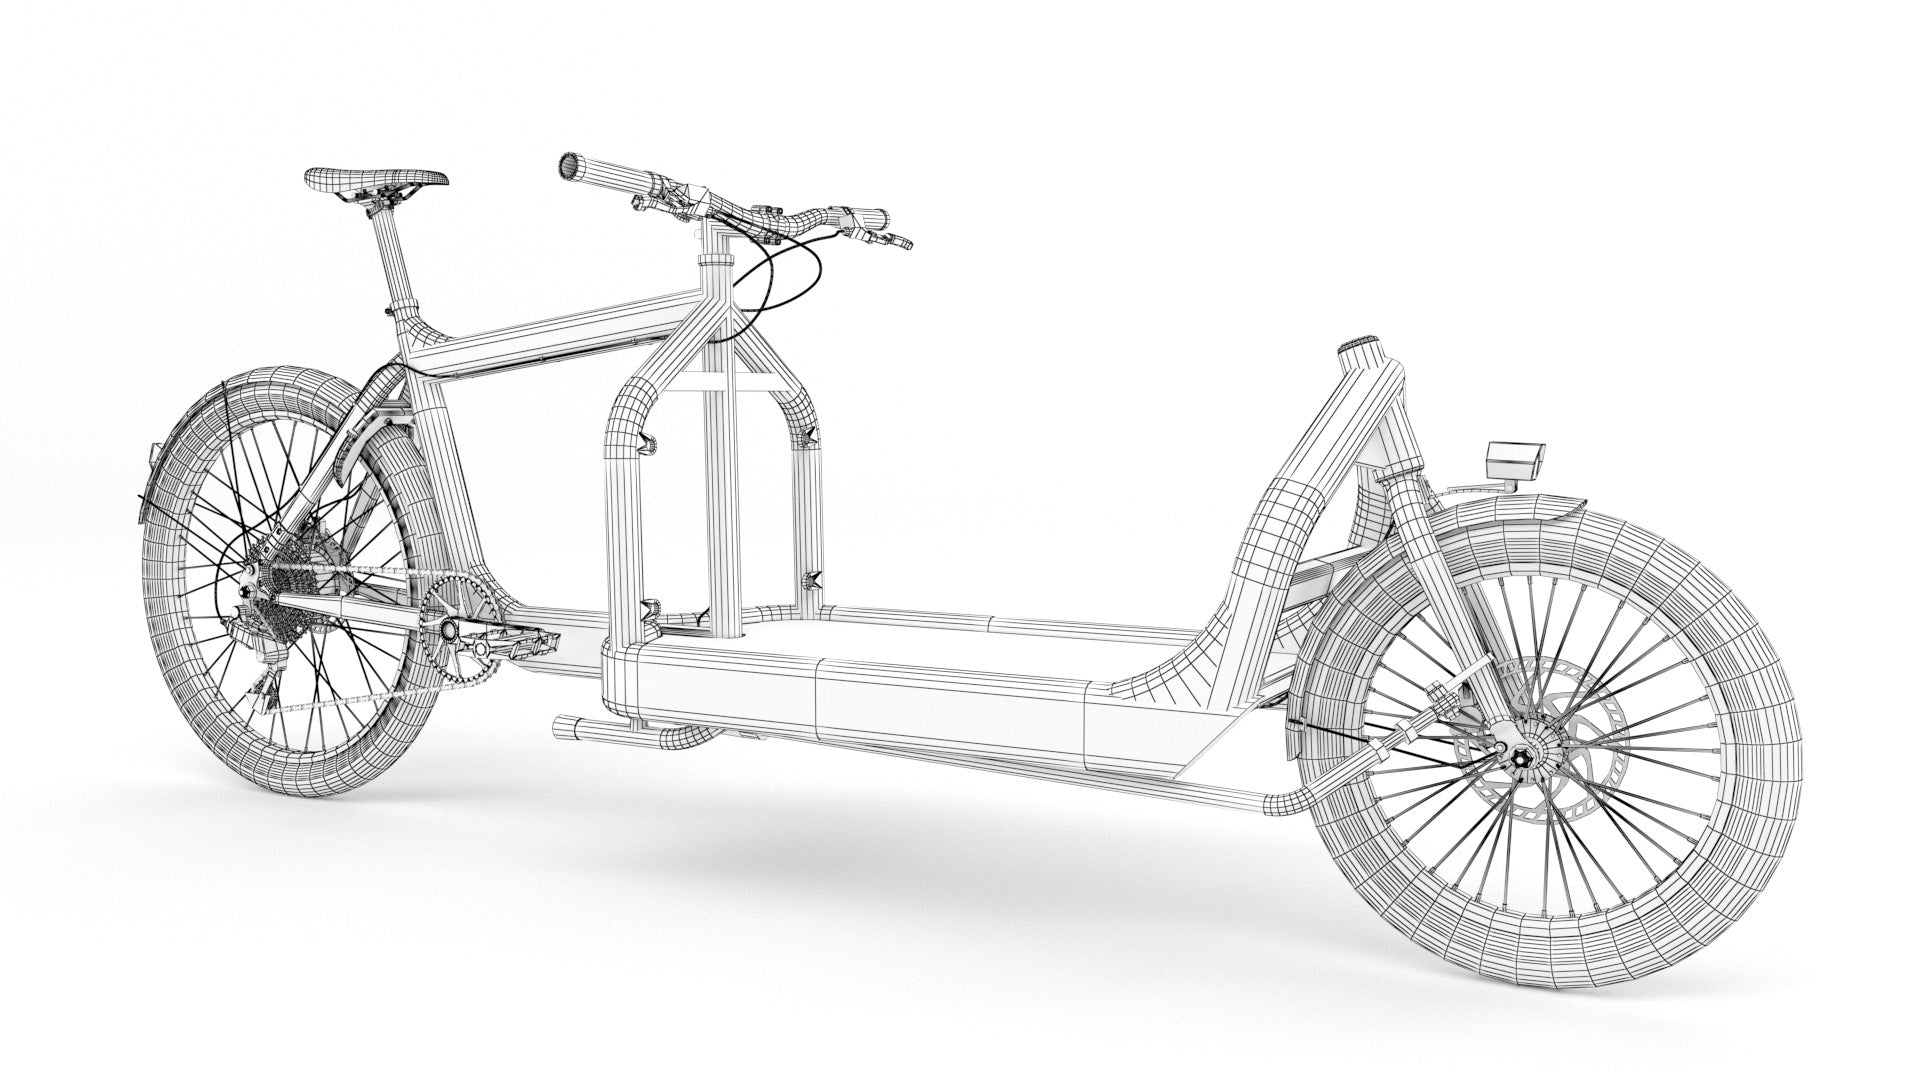 Bullit cargo bike 3D model